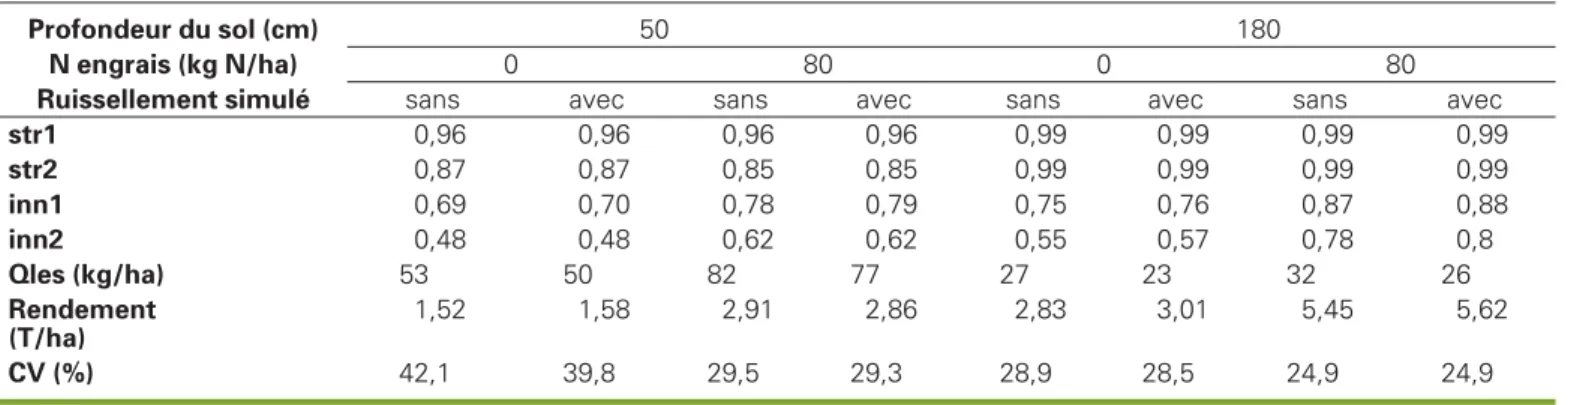 Figure 3. Moyennes sur 21 années des productivités et pertes d’azote par lessivage en fonction de la date de semis.